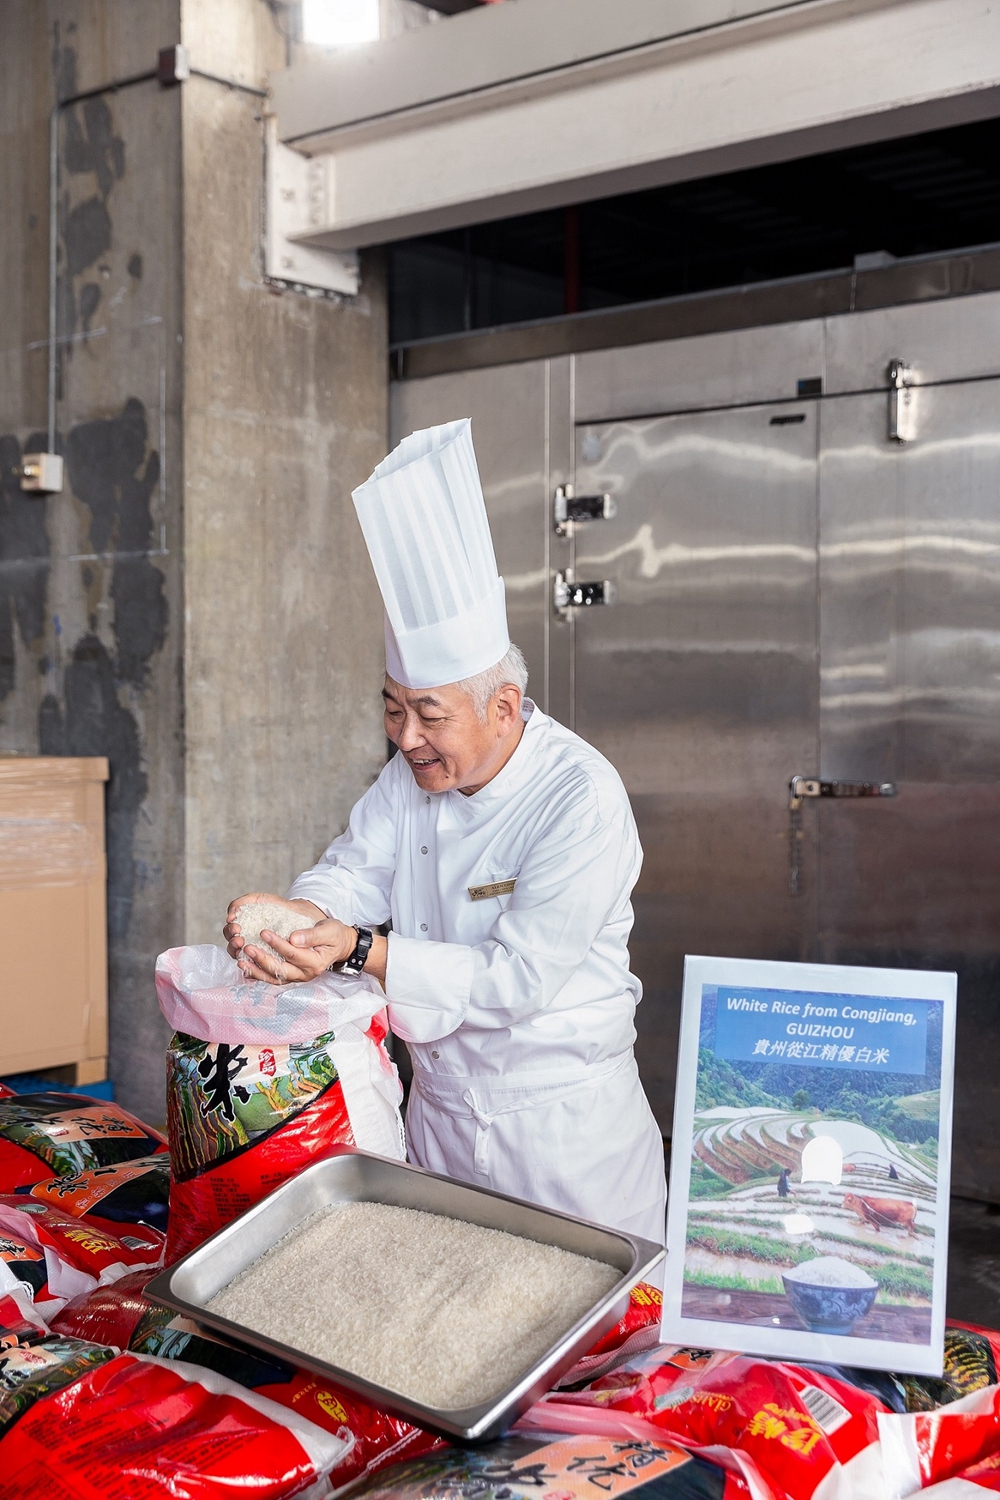 公司行政总厨周连元于威尼斯人卸货区查收该批从江县精优白米